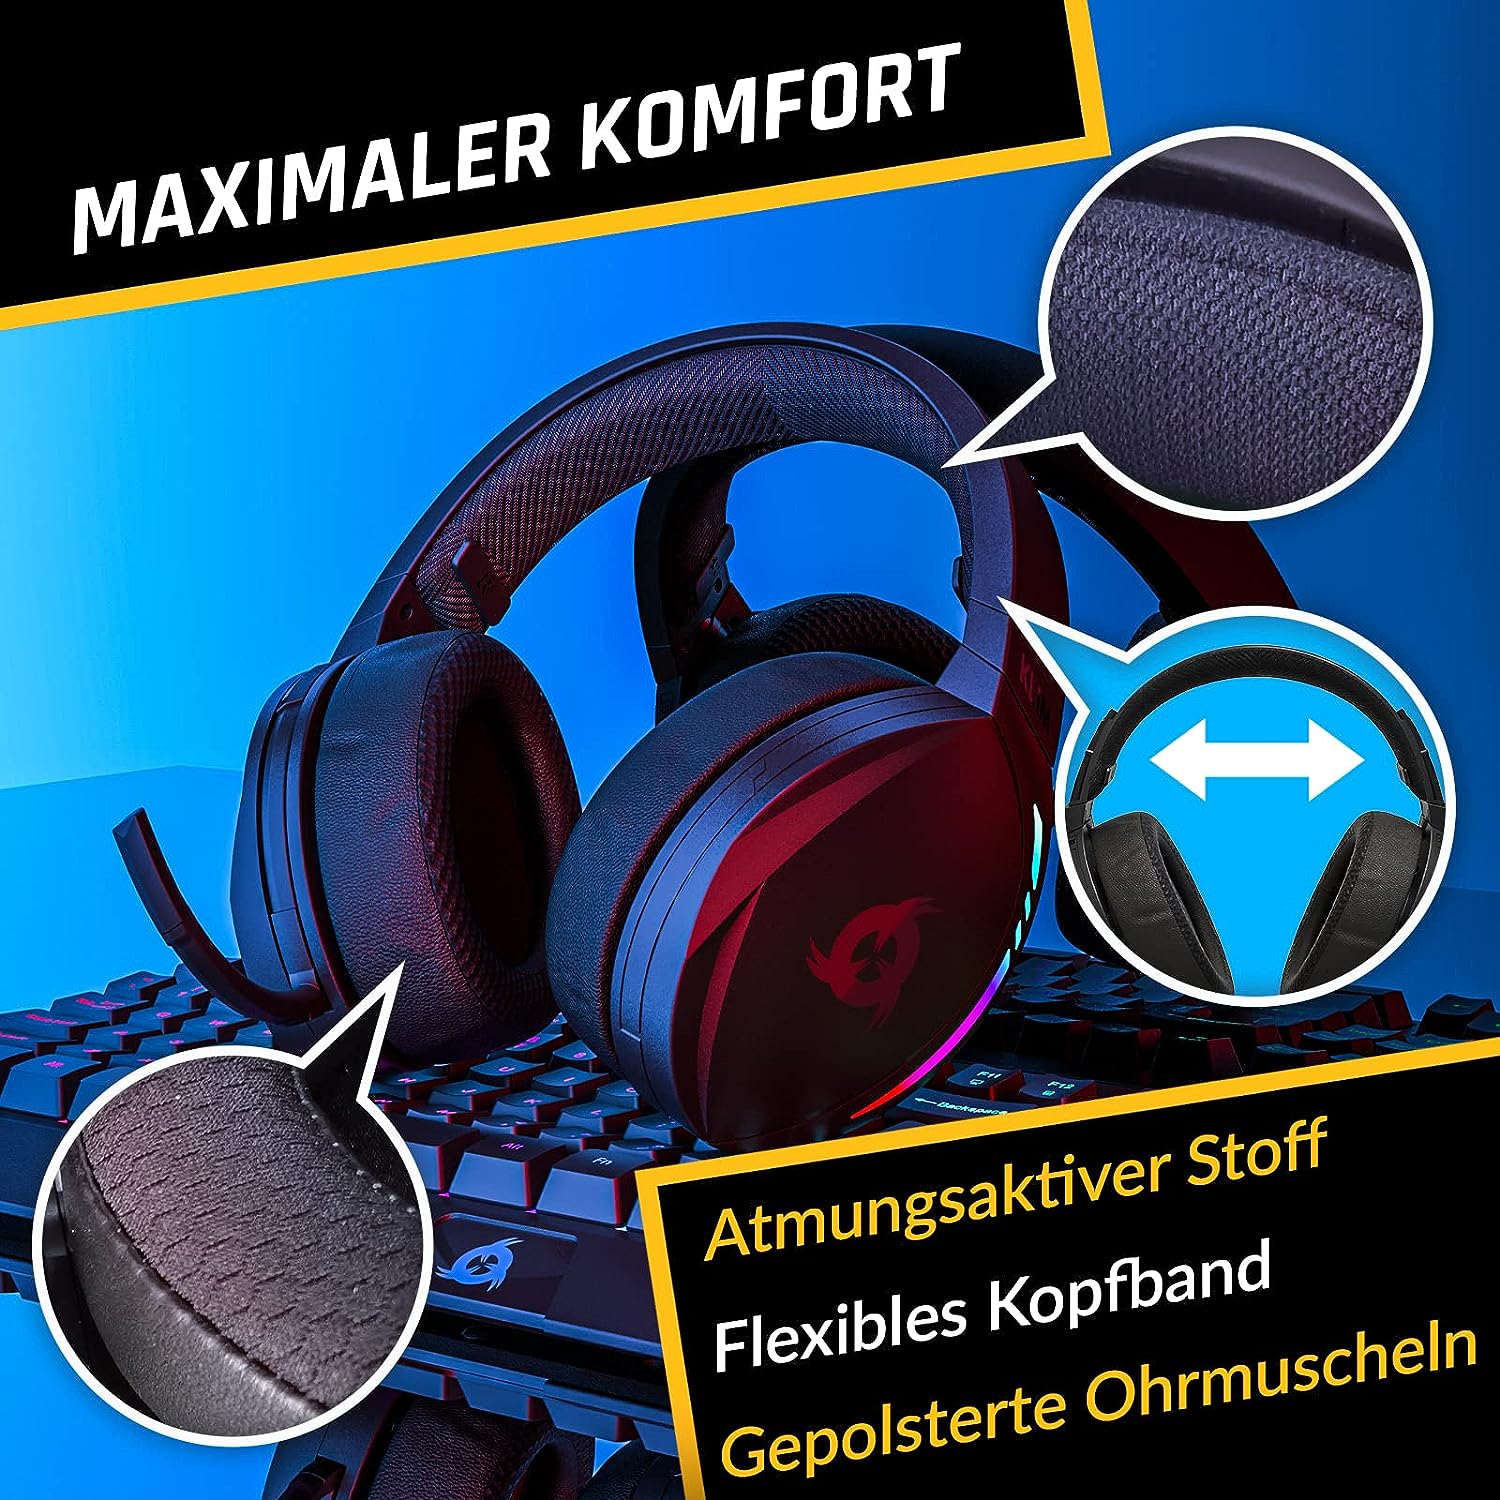 KLIM Panther Gaming Headset